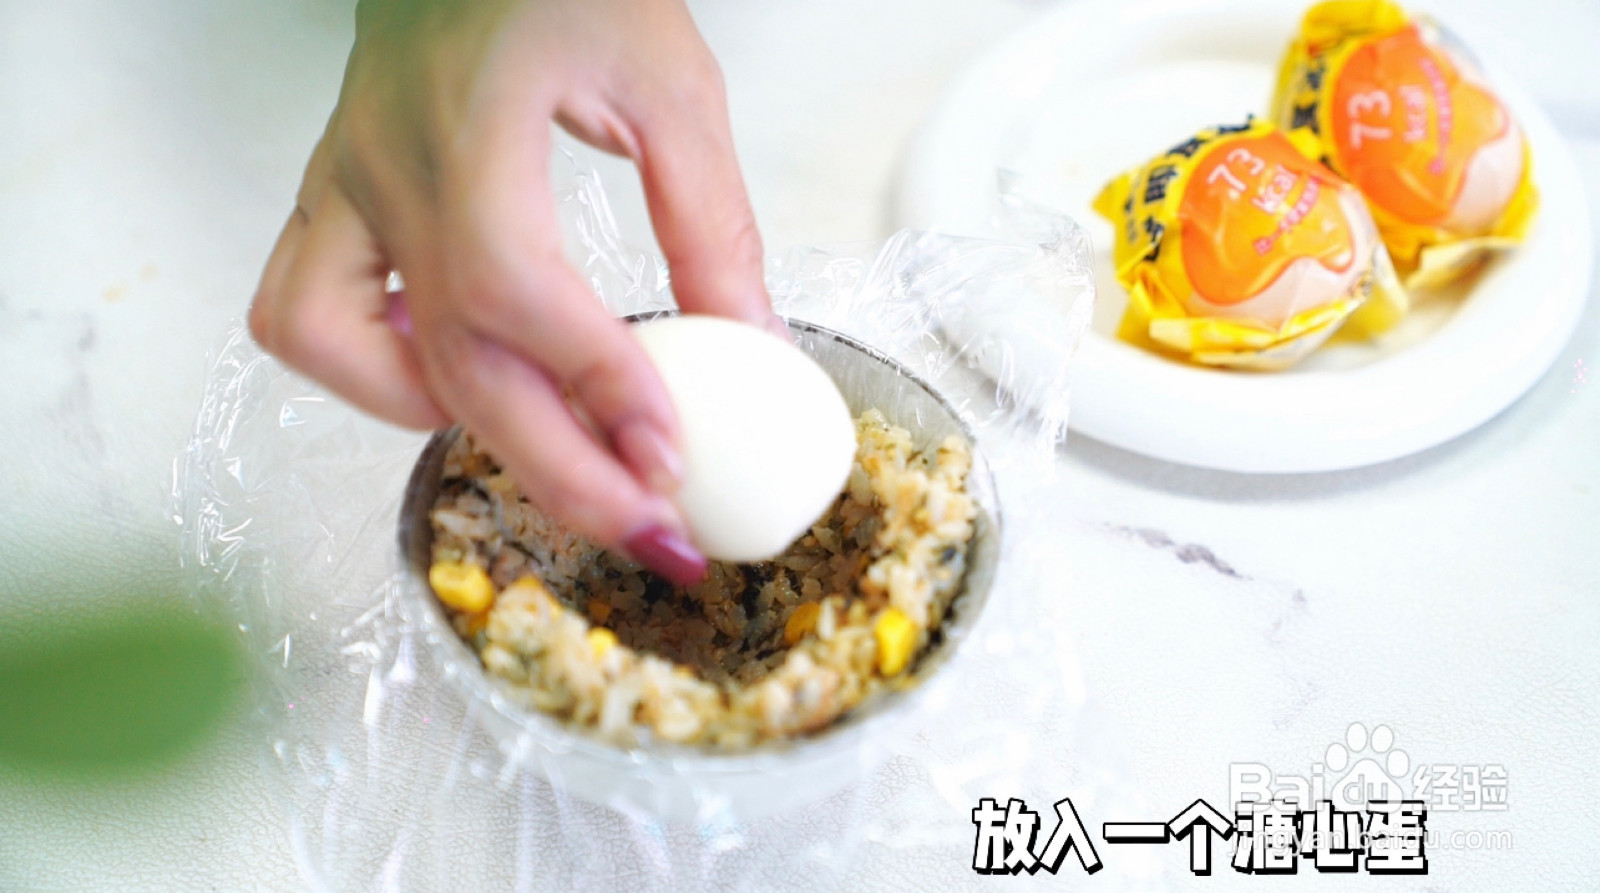 溏心蛋肉松海苔饭团的做法